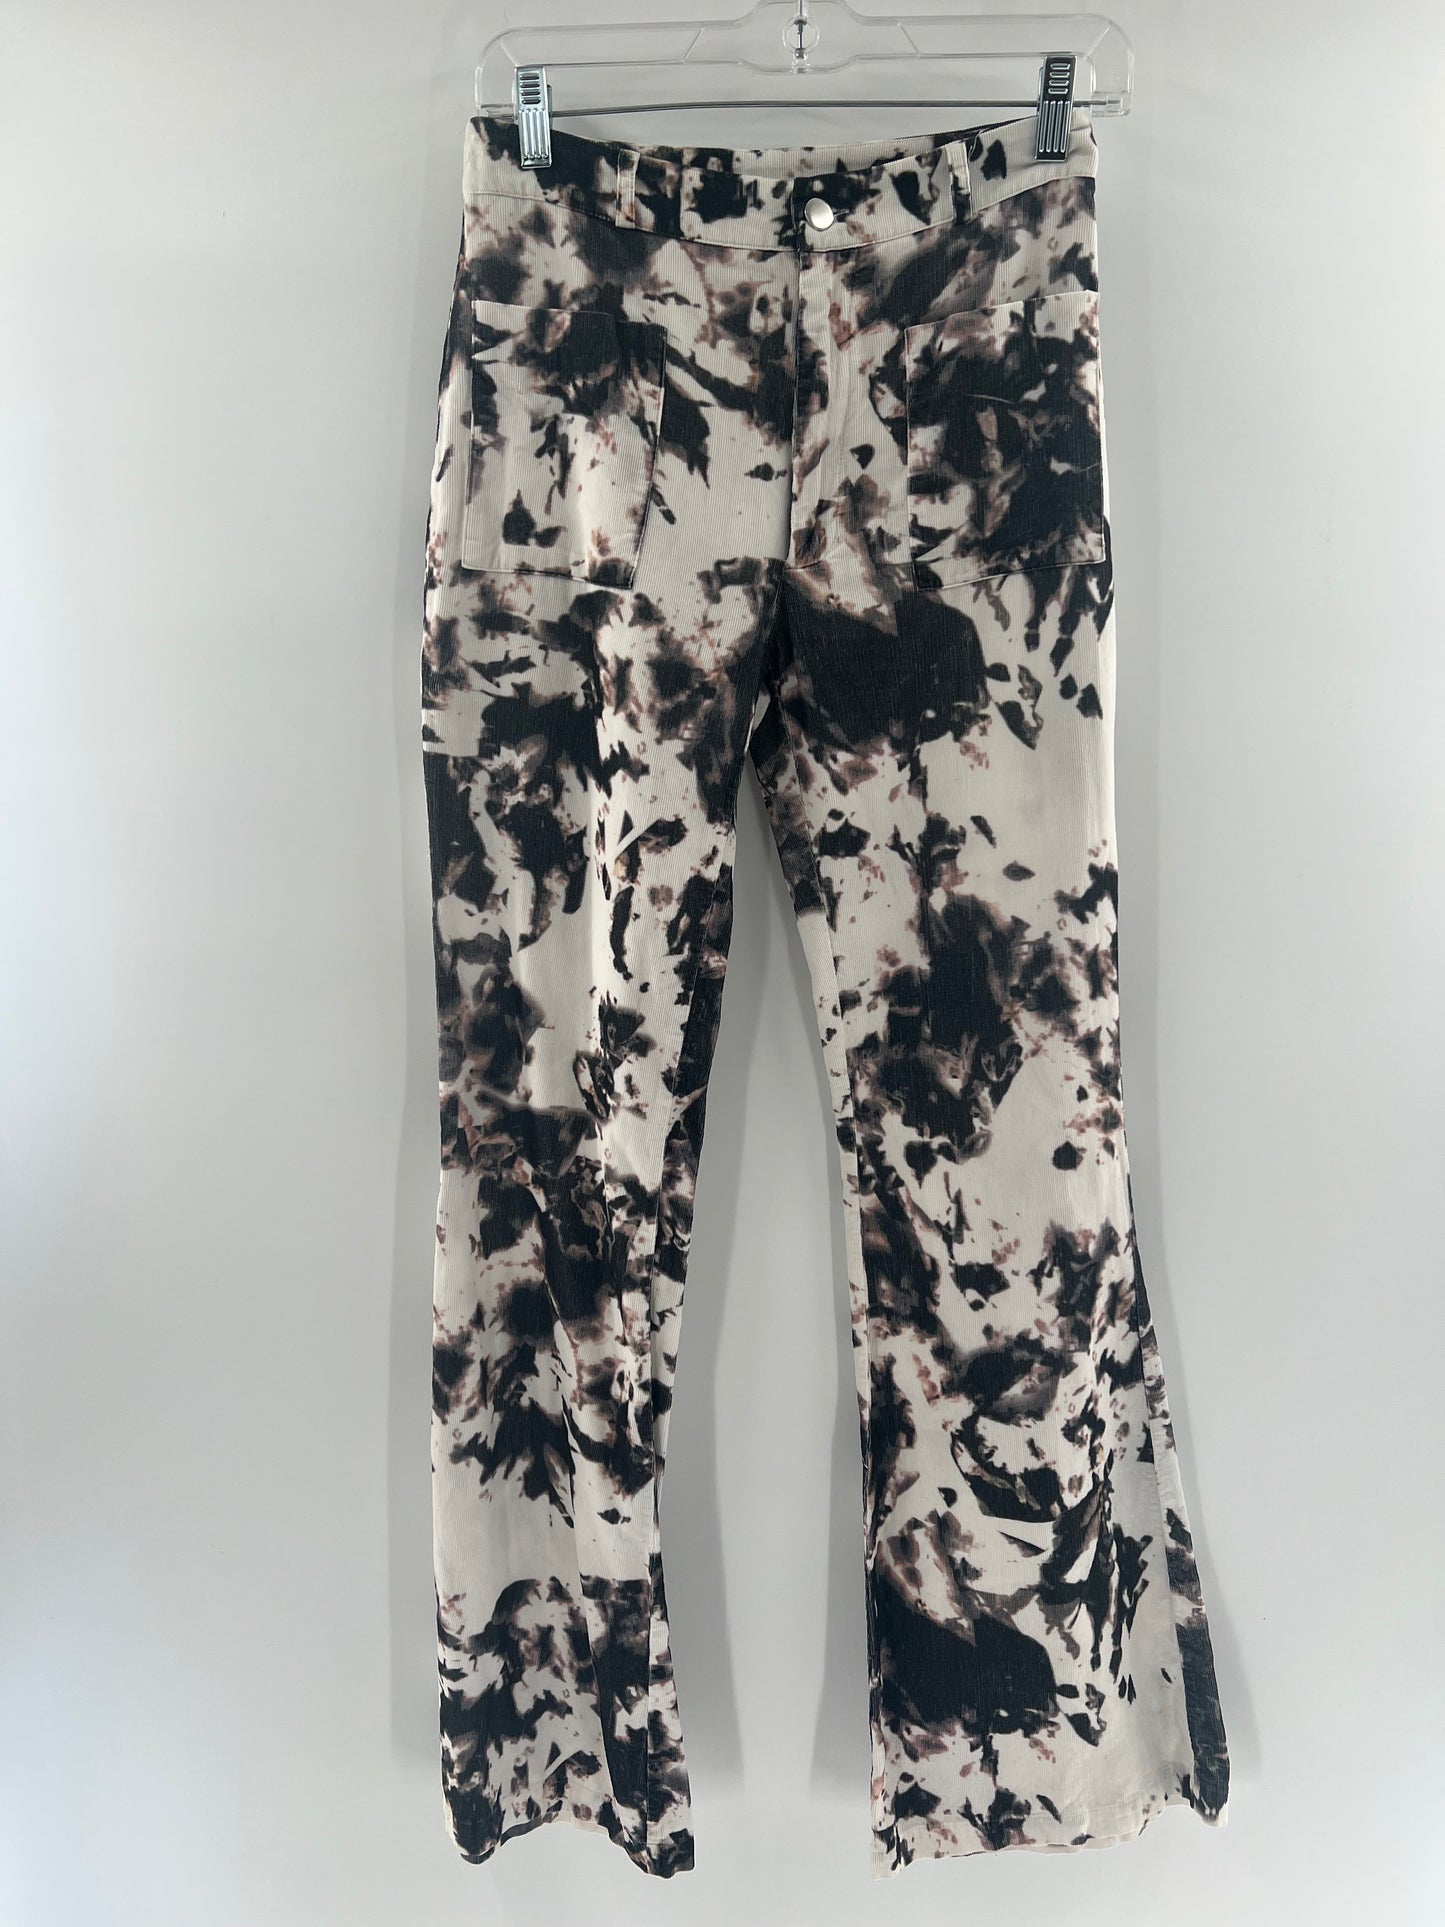 Cynthia Rowley Tie Dye Corduroy Flare Pants (Size 0)